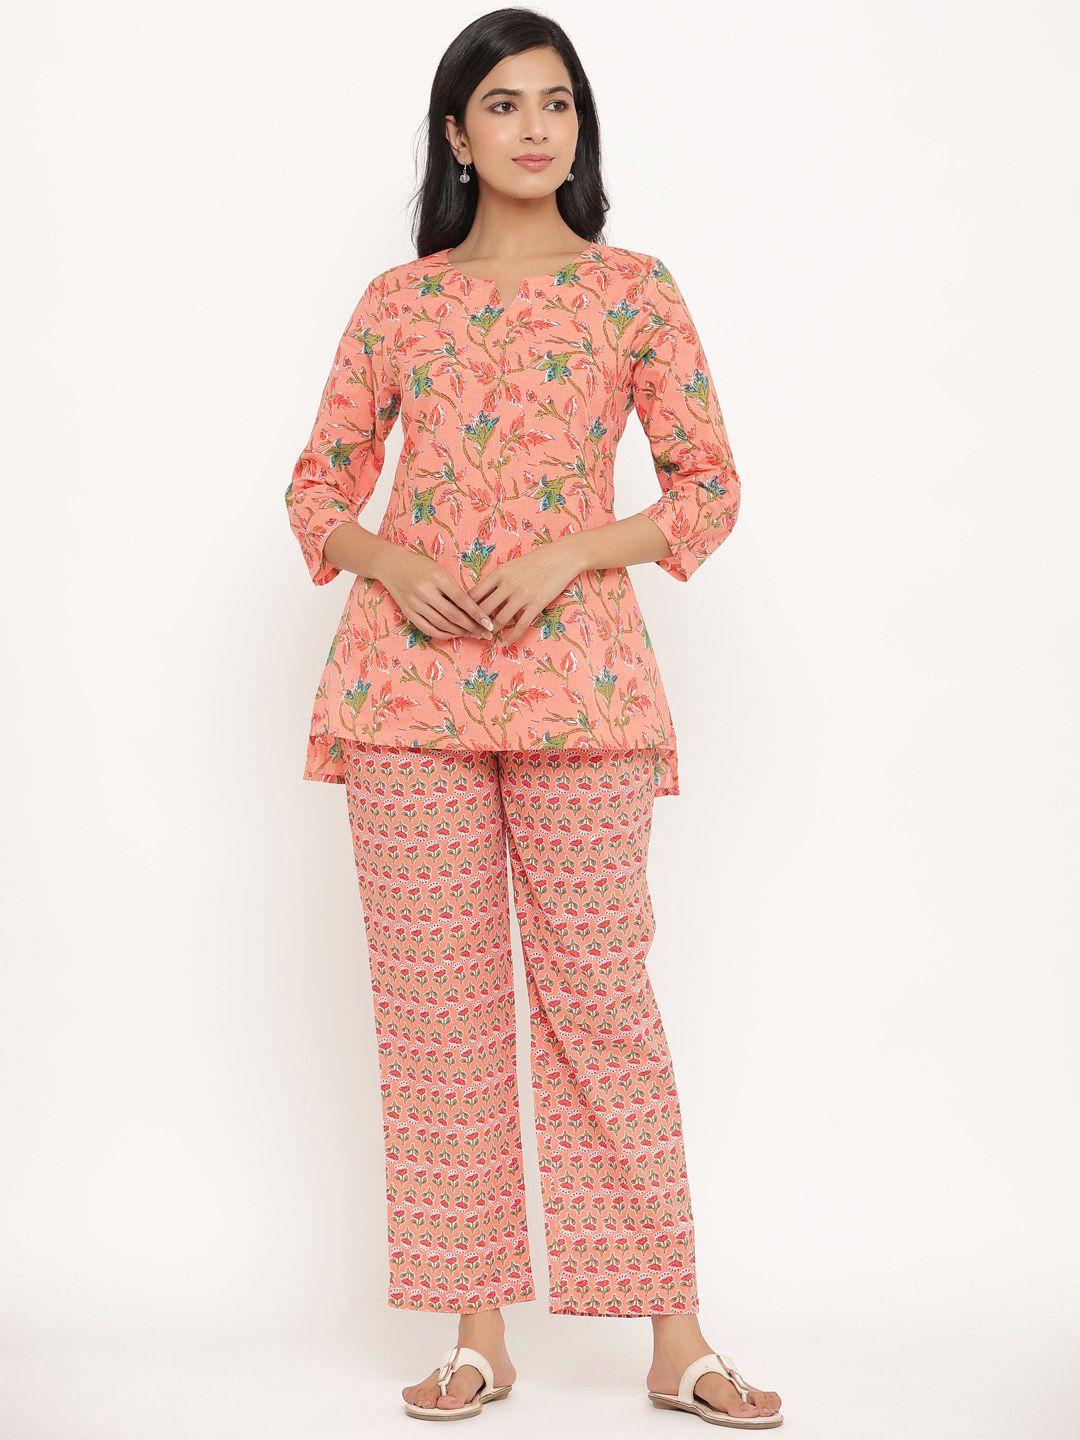 sangria floral printed pure cotton kurti with pyjamas